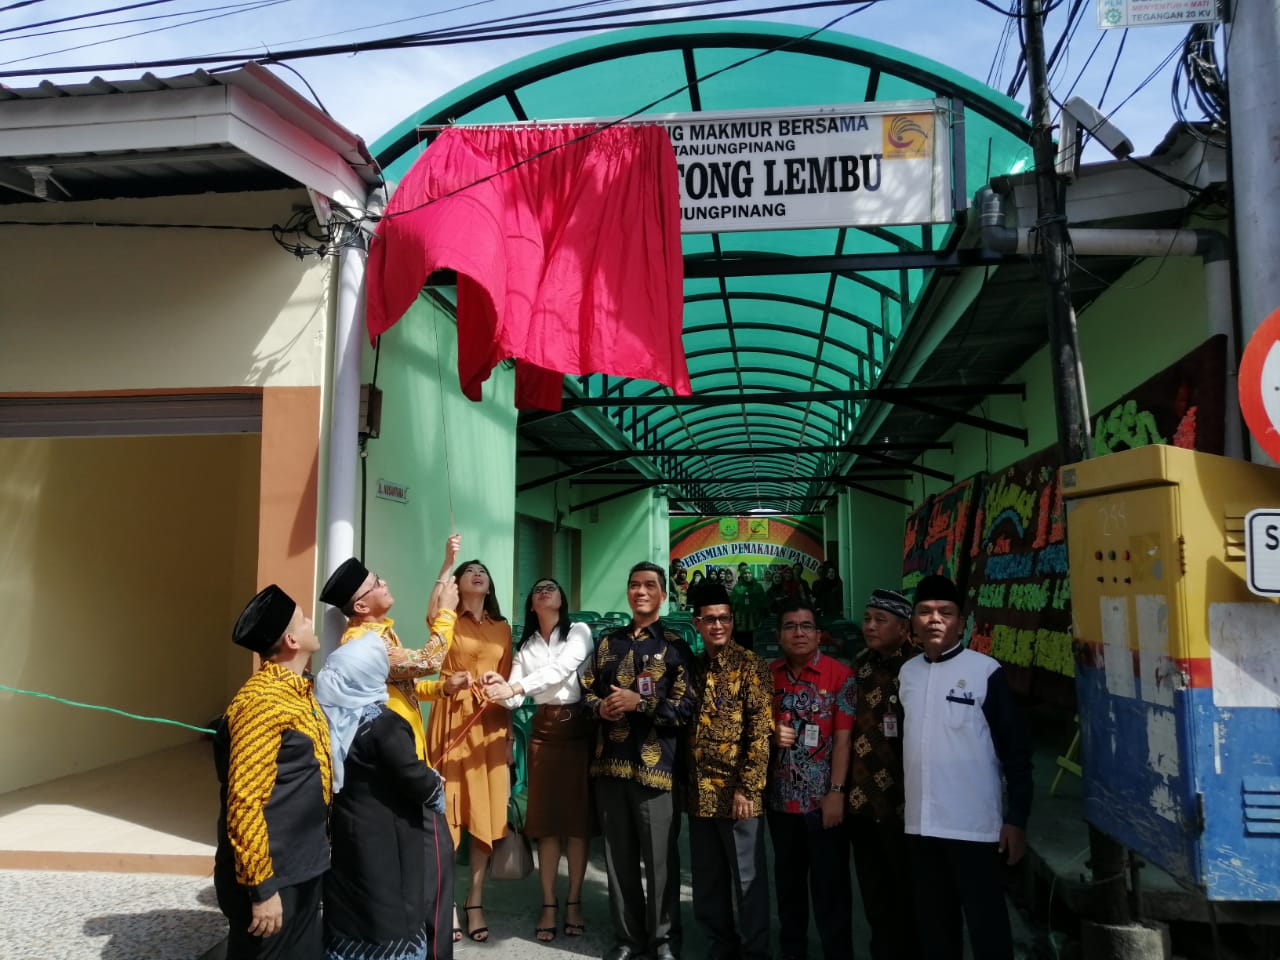 Wali Kota Tanjungpinang Syahrul terlihat membuka tirai plang nama saat menyampaikan kata sambutan di peresmian pemakaian Pasar Potong Lembu, Kamis (30/1).